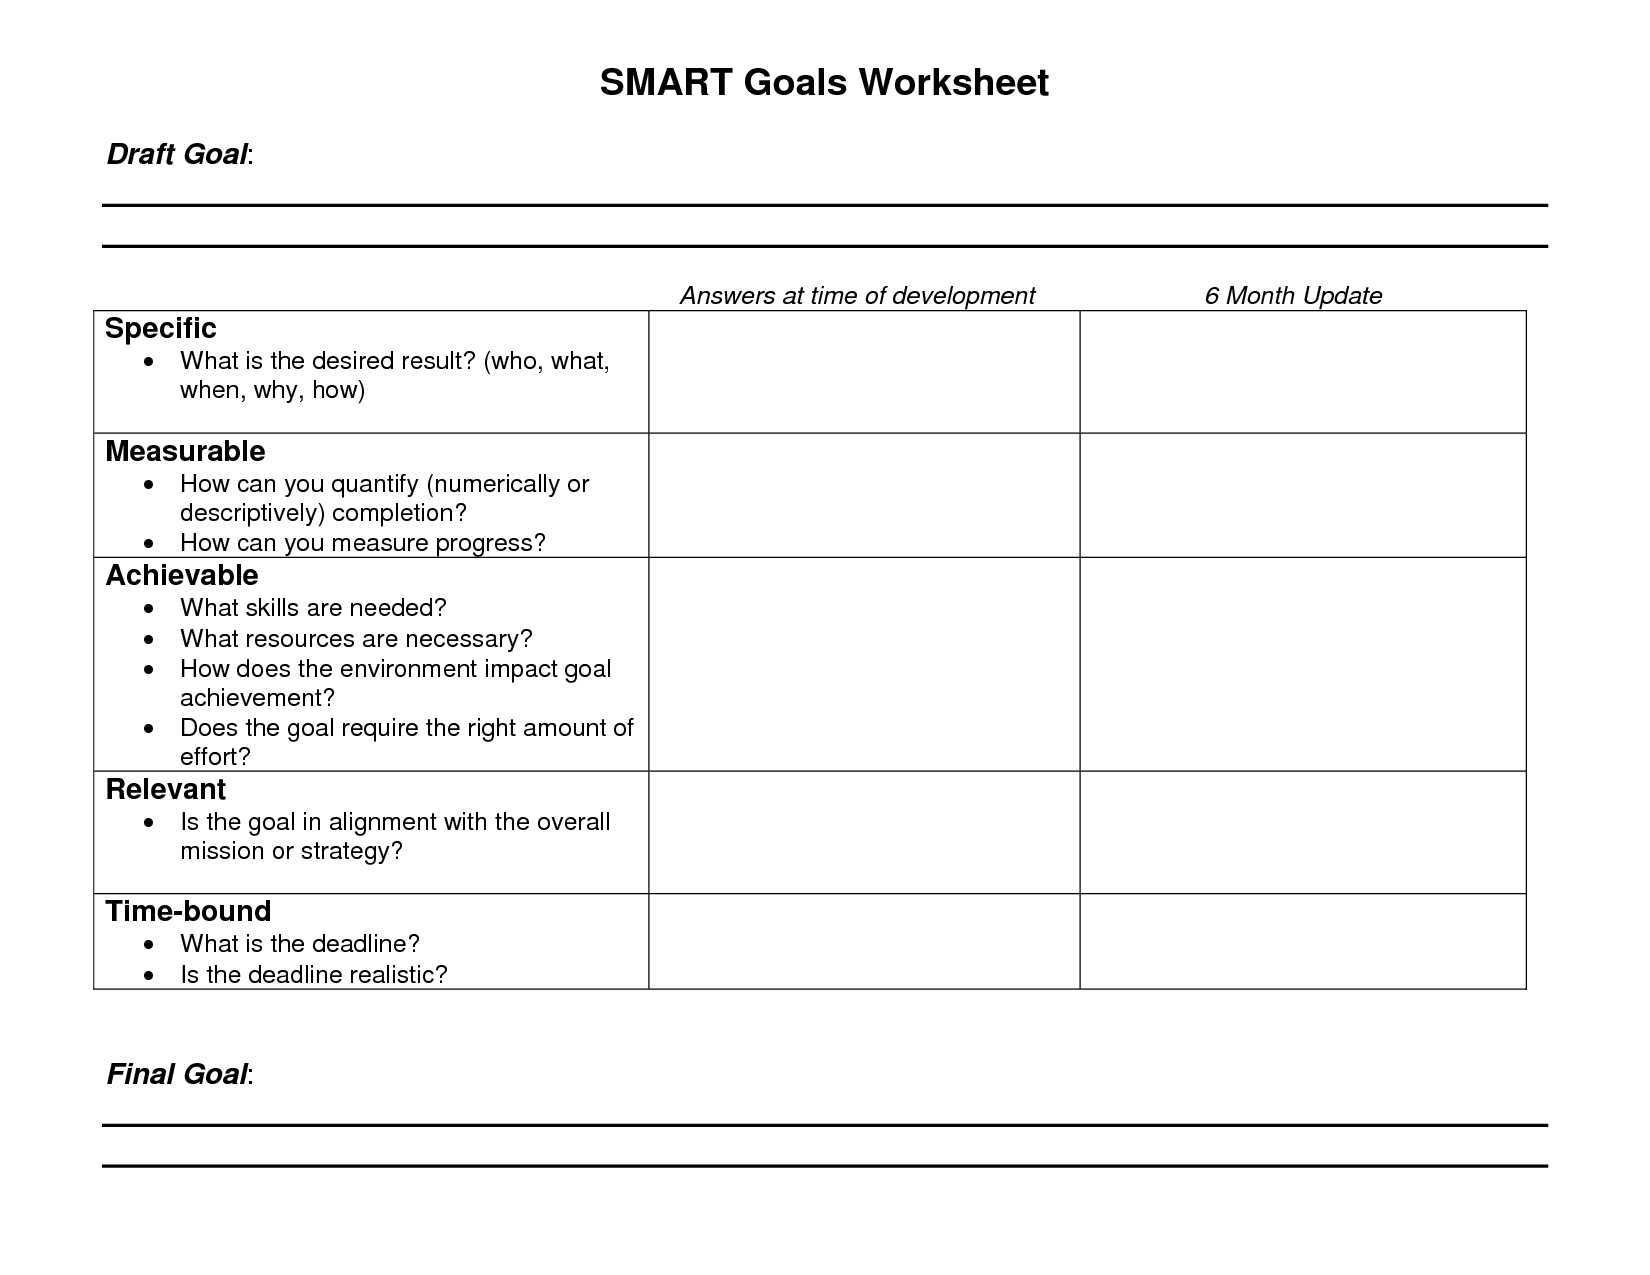 Smart Goals Worksheet Printable Image